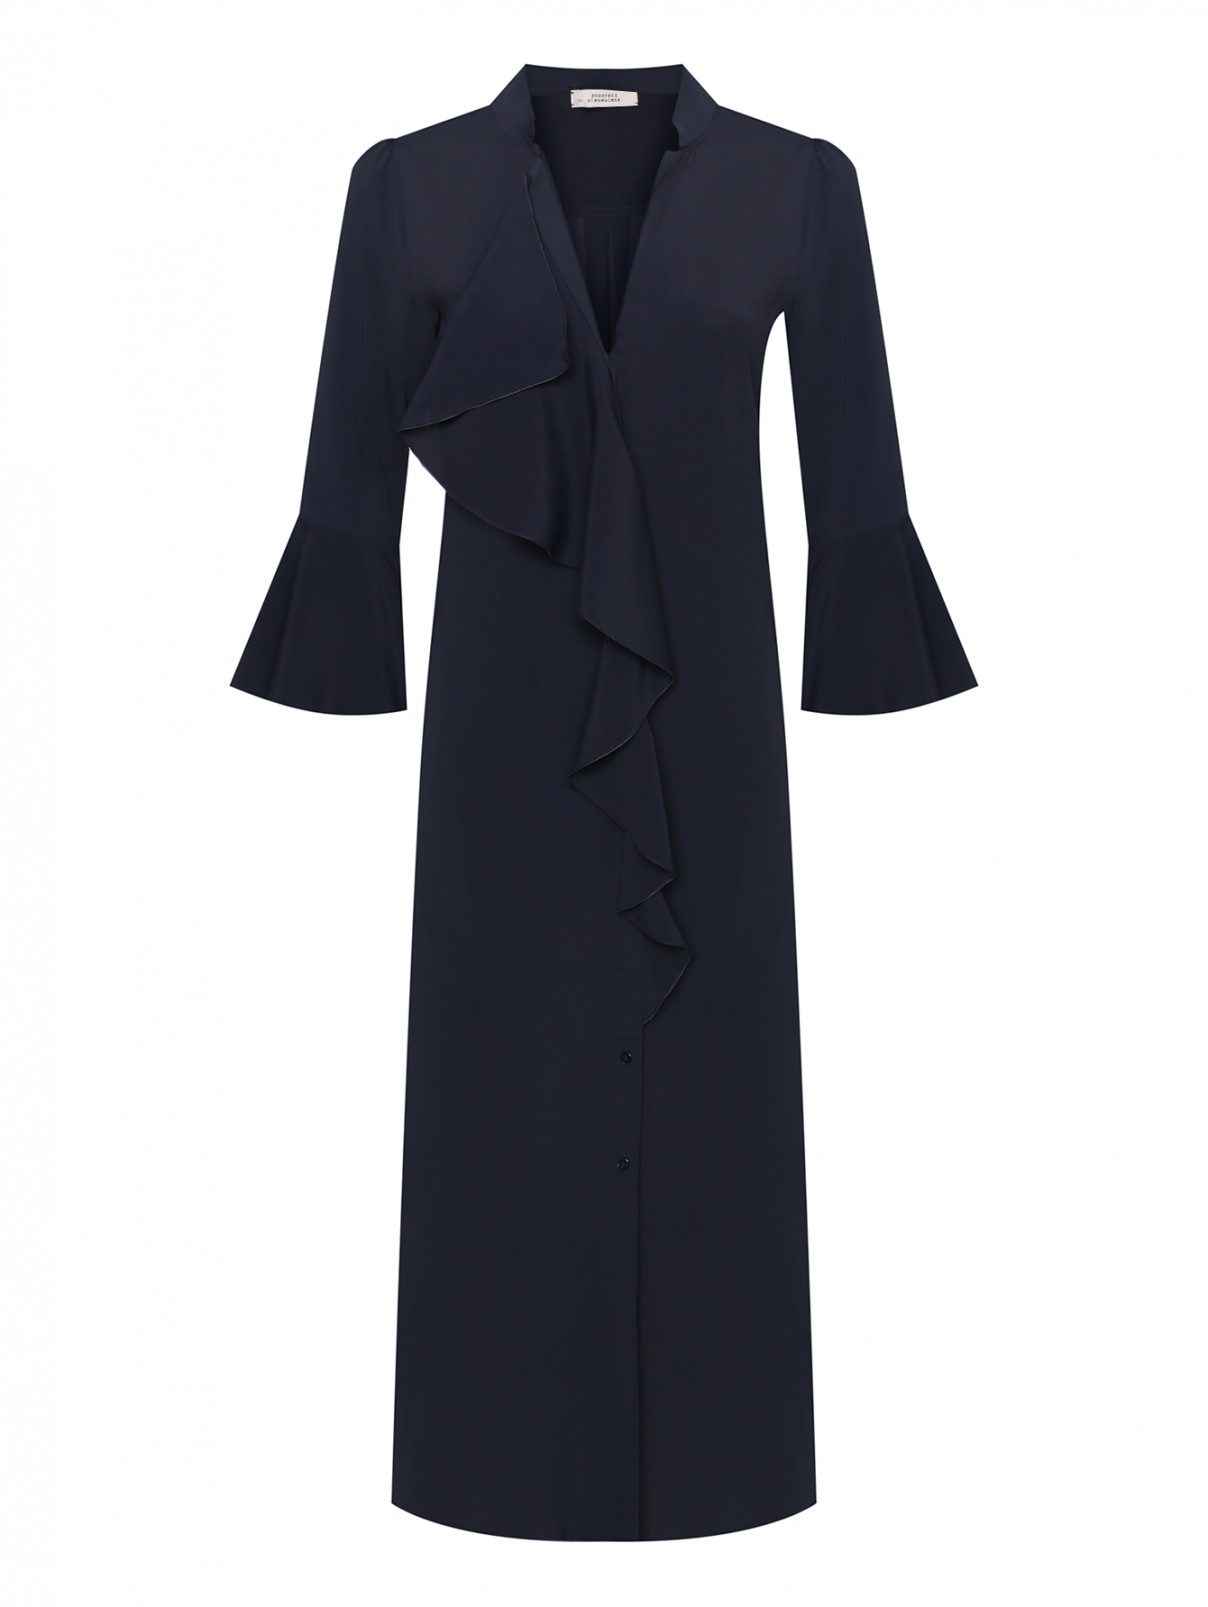 Платье на пуговицах с карманами Dorothee Schumacher  –  Общий вид  – Цвет:  Синий